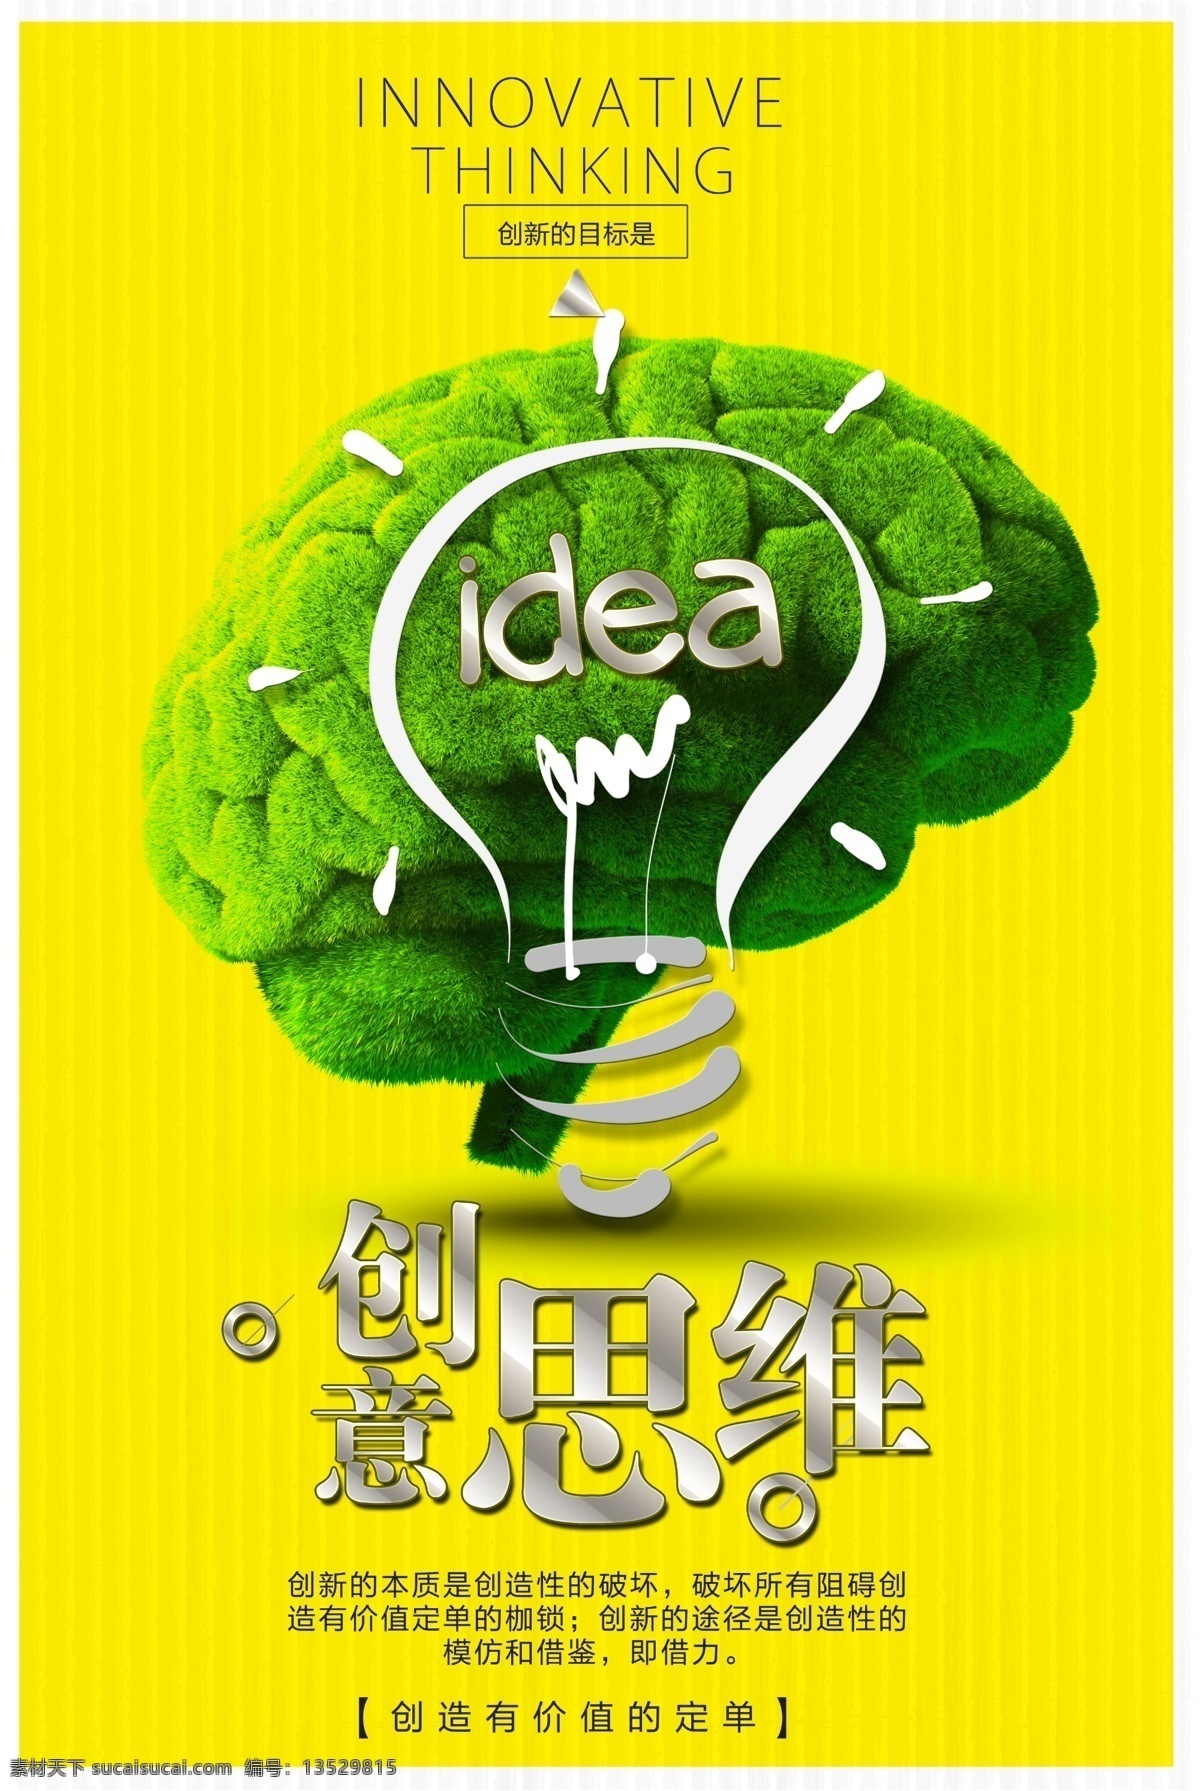 创意思维 创意 思维 大脑 idea 灯泡 海报